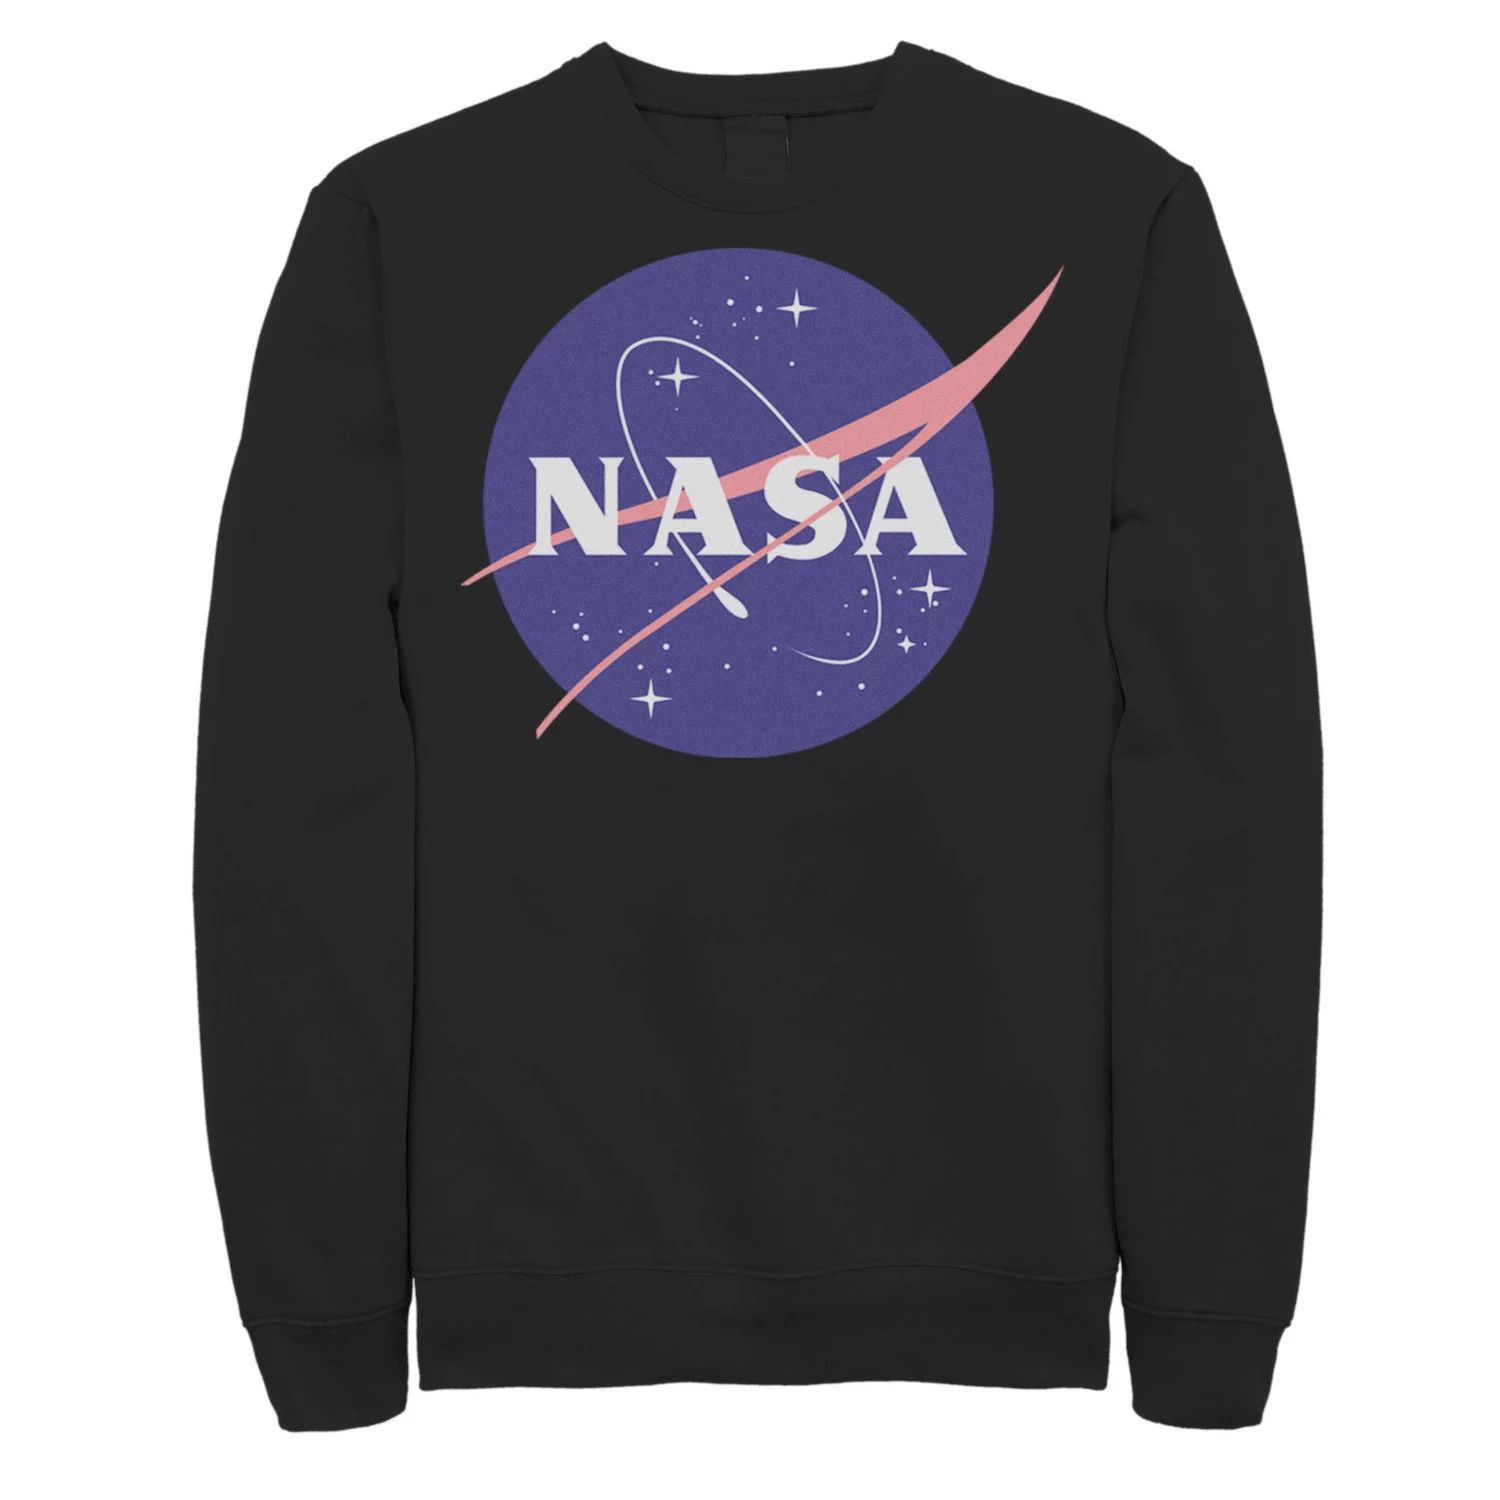 Мужской флисовый пуловер с классическим круглым логотипом NASA Licensed Character